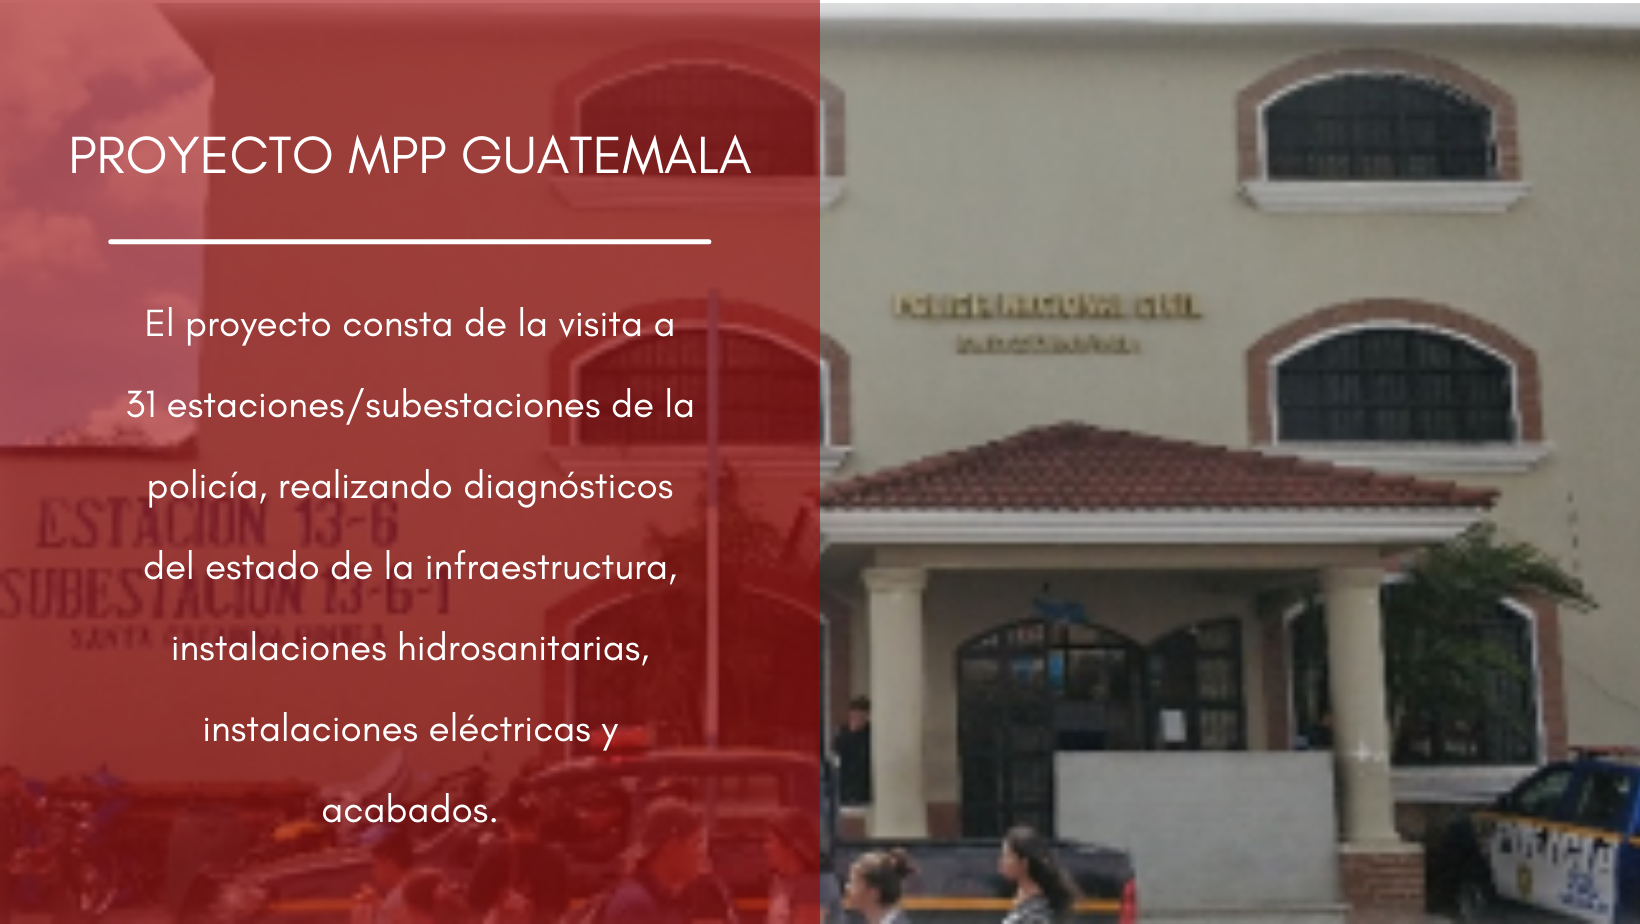 PROYECTO MPP GUATEMALA